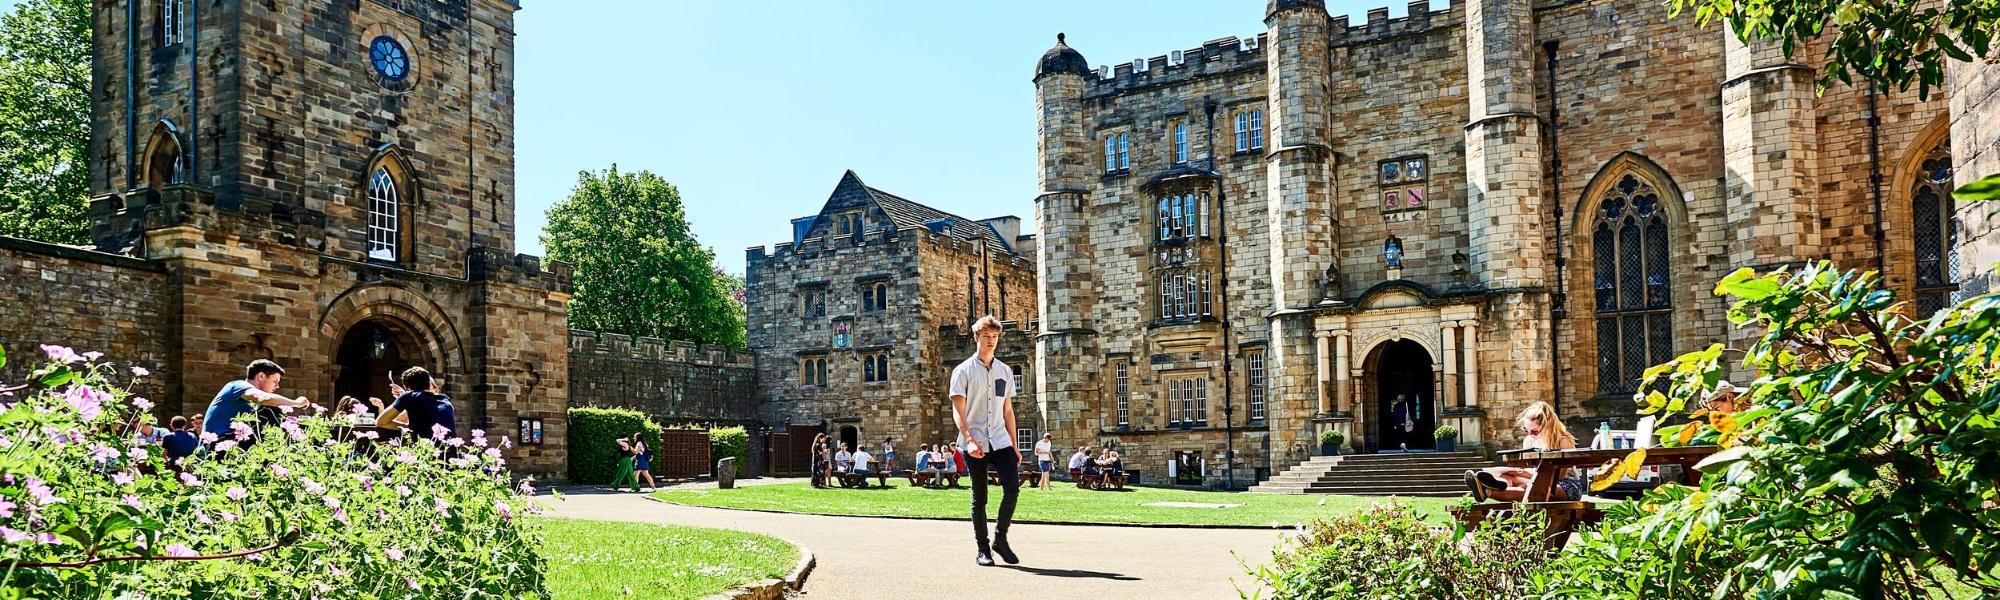 Durham Castle Courtyard